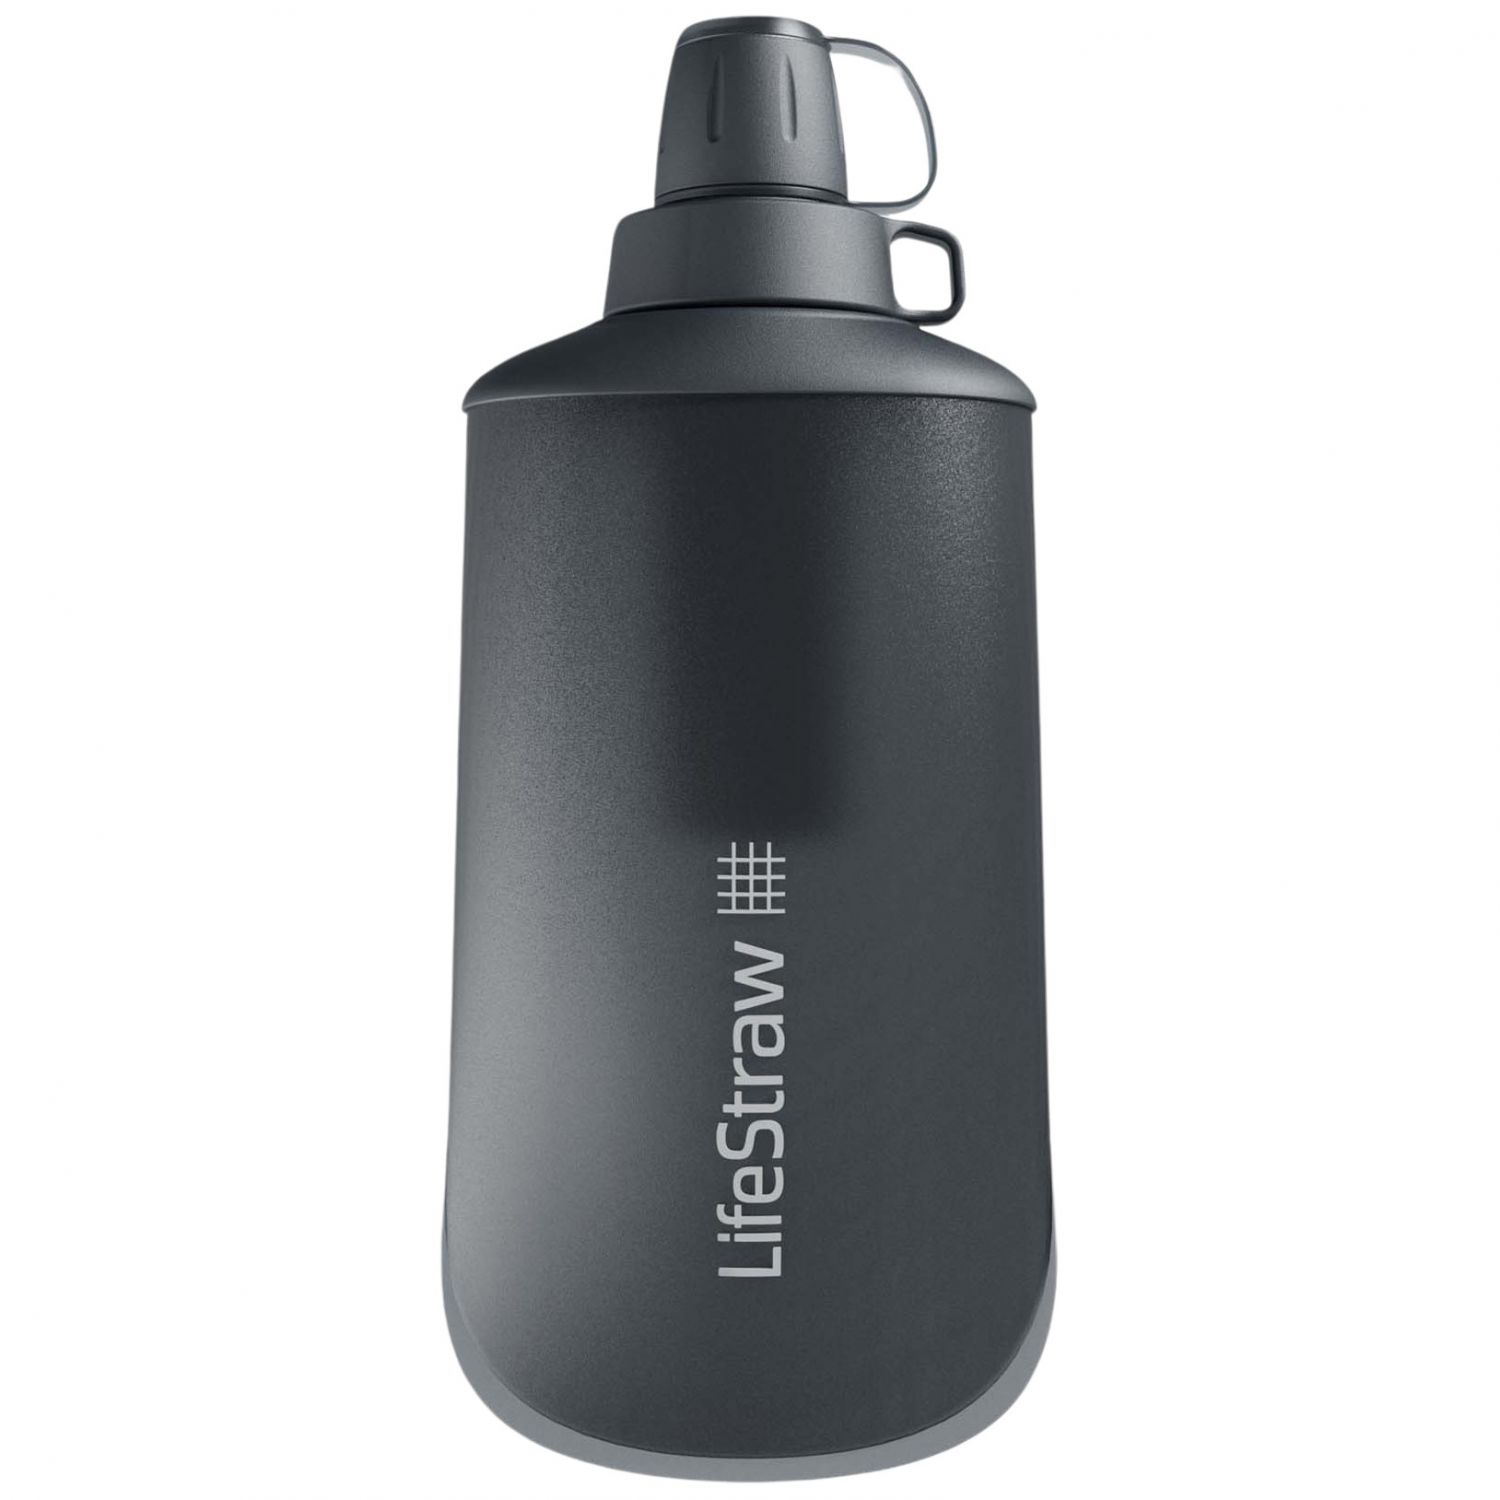 Brug LifeStraw Peak Series Collabsible Squeeze Bottle, 650ml, mørkegrå til en forbedret oplevelse